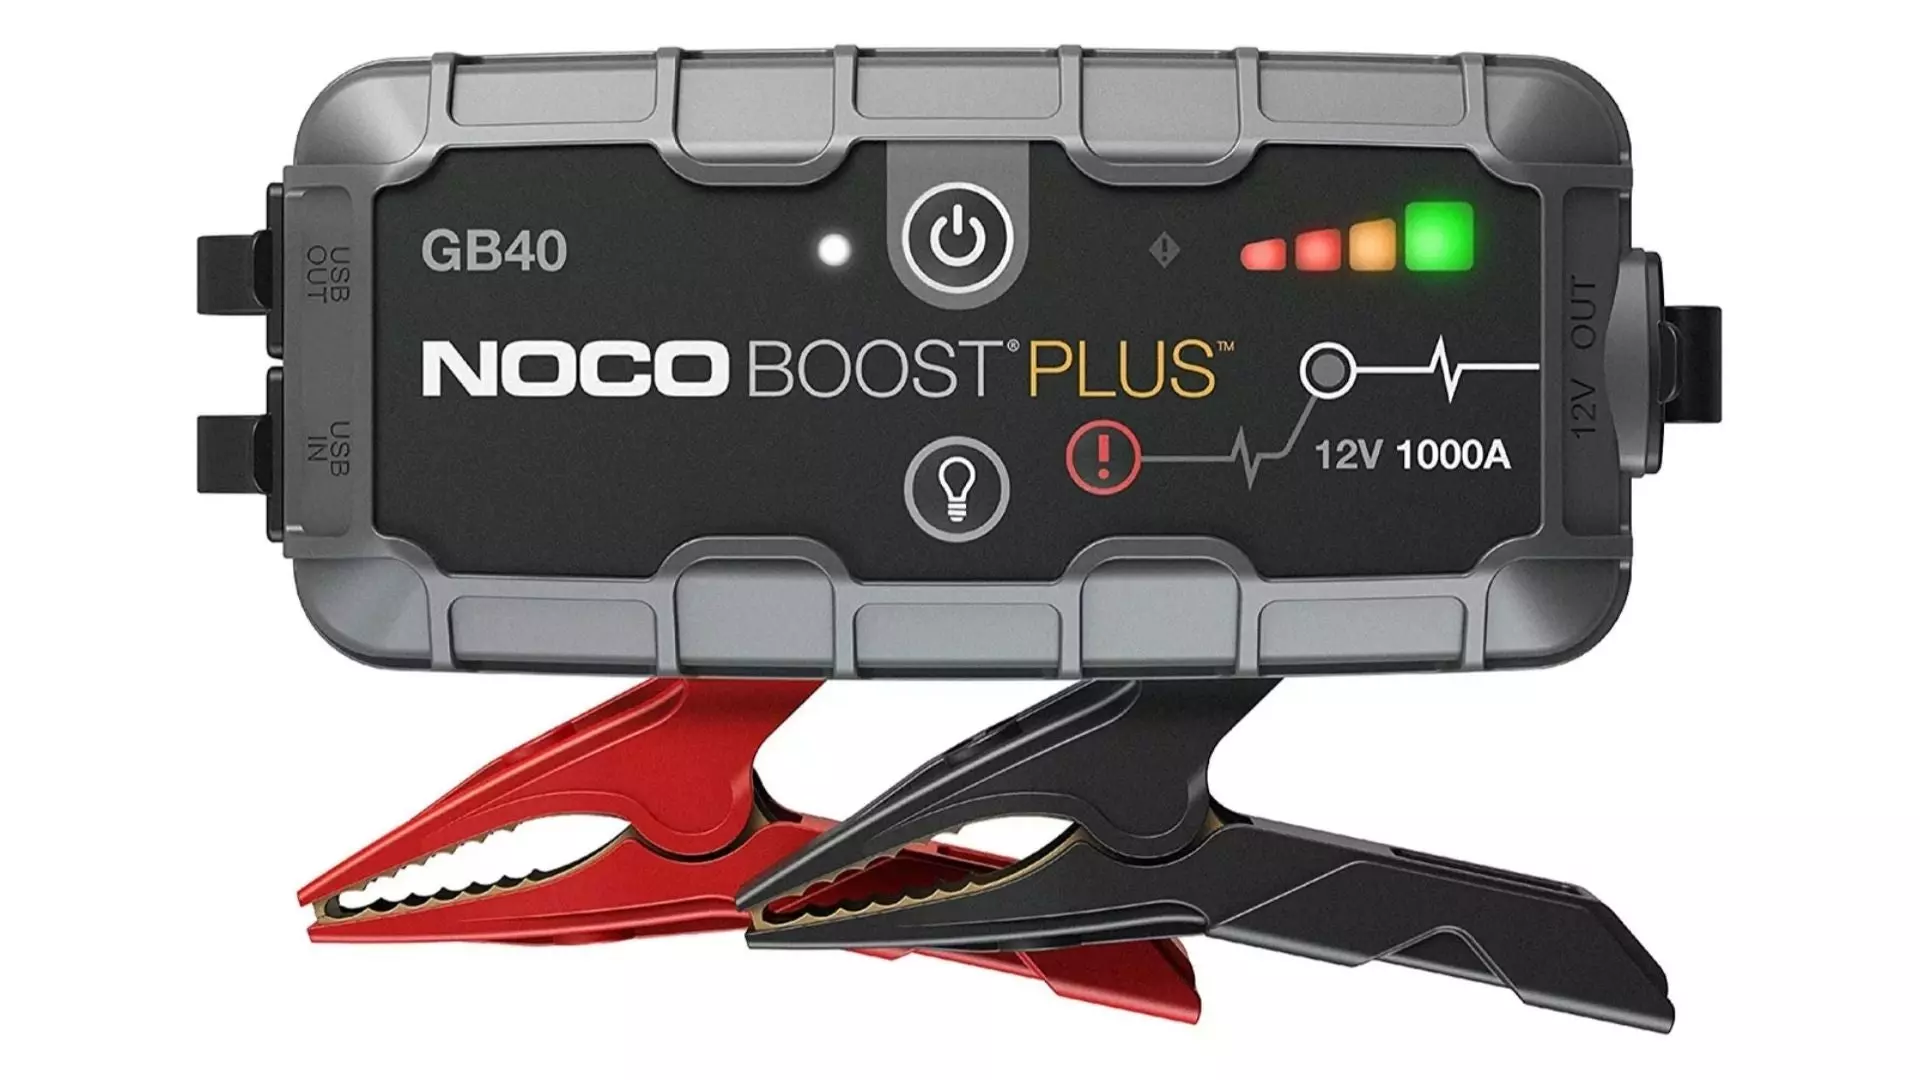 Noco Boost Plus GB40 1,000 Amp